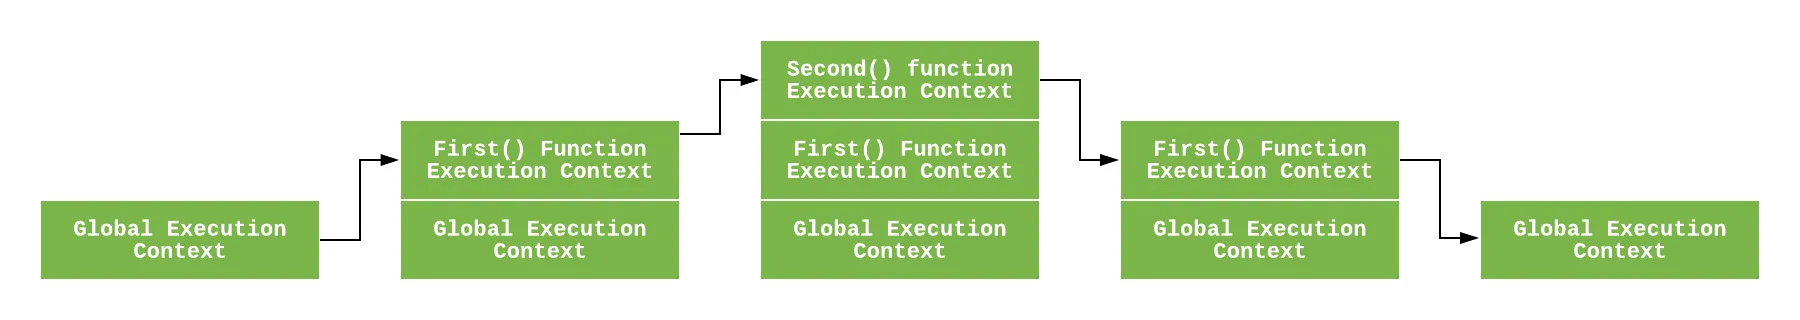 예제 코드의 실행 컨텍스트 흐름